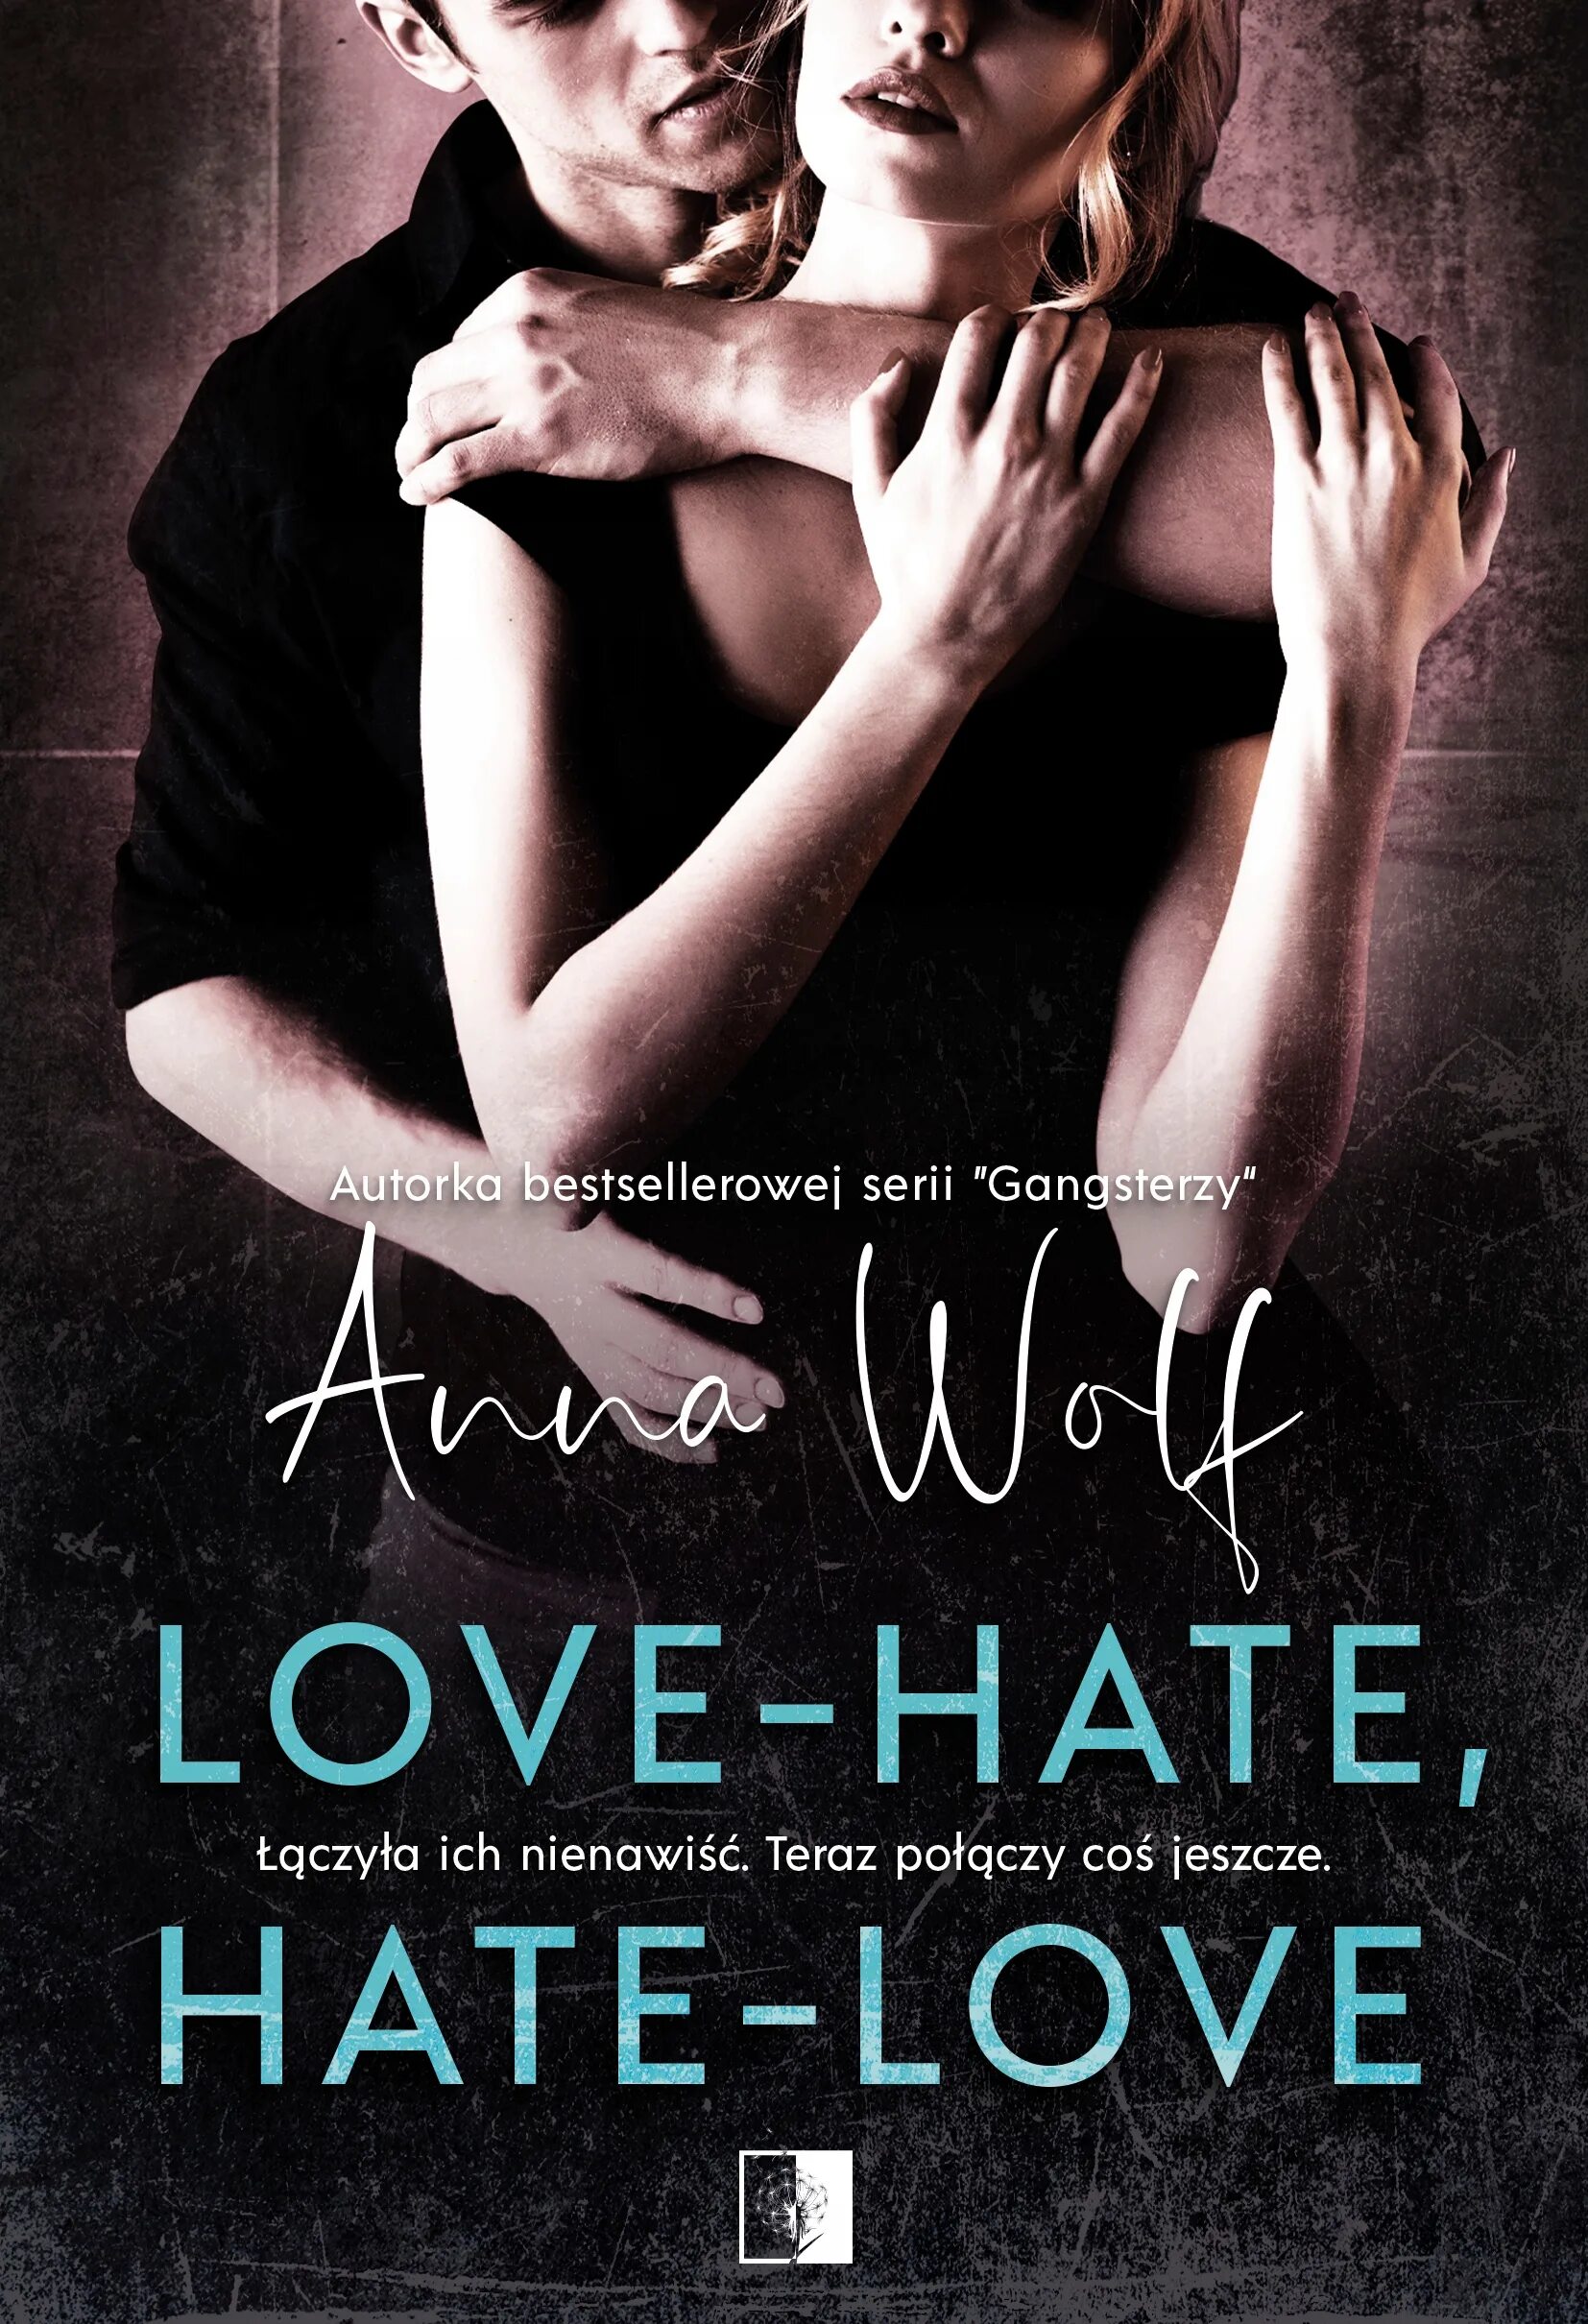 Читать книгу ненависть любовь 2. Любовь и ненависть. Любовь ненависть ненависть любовь книги. Любовь ненависть обложка.